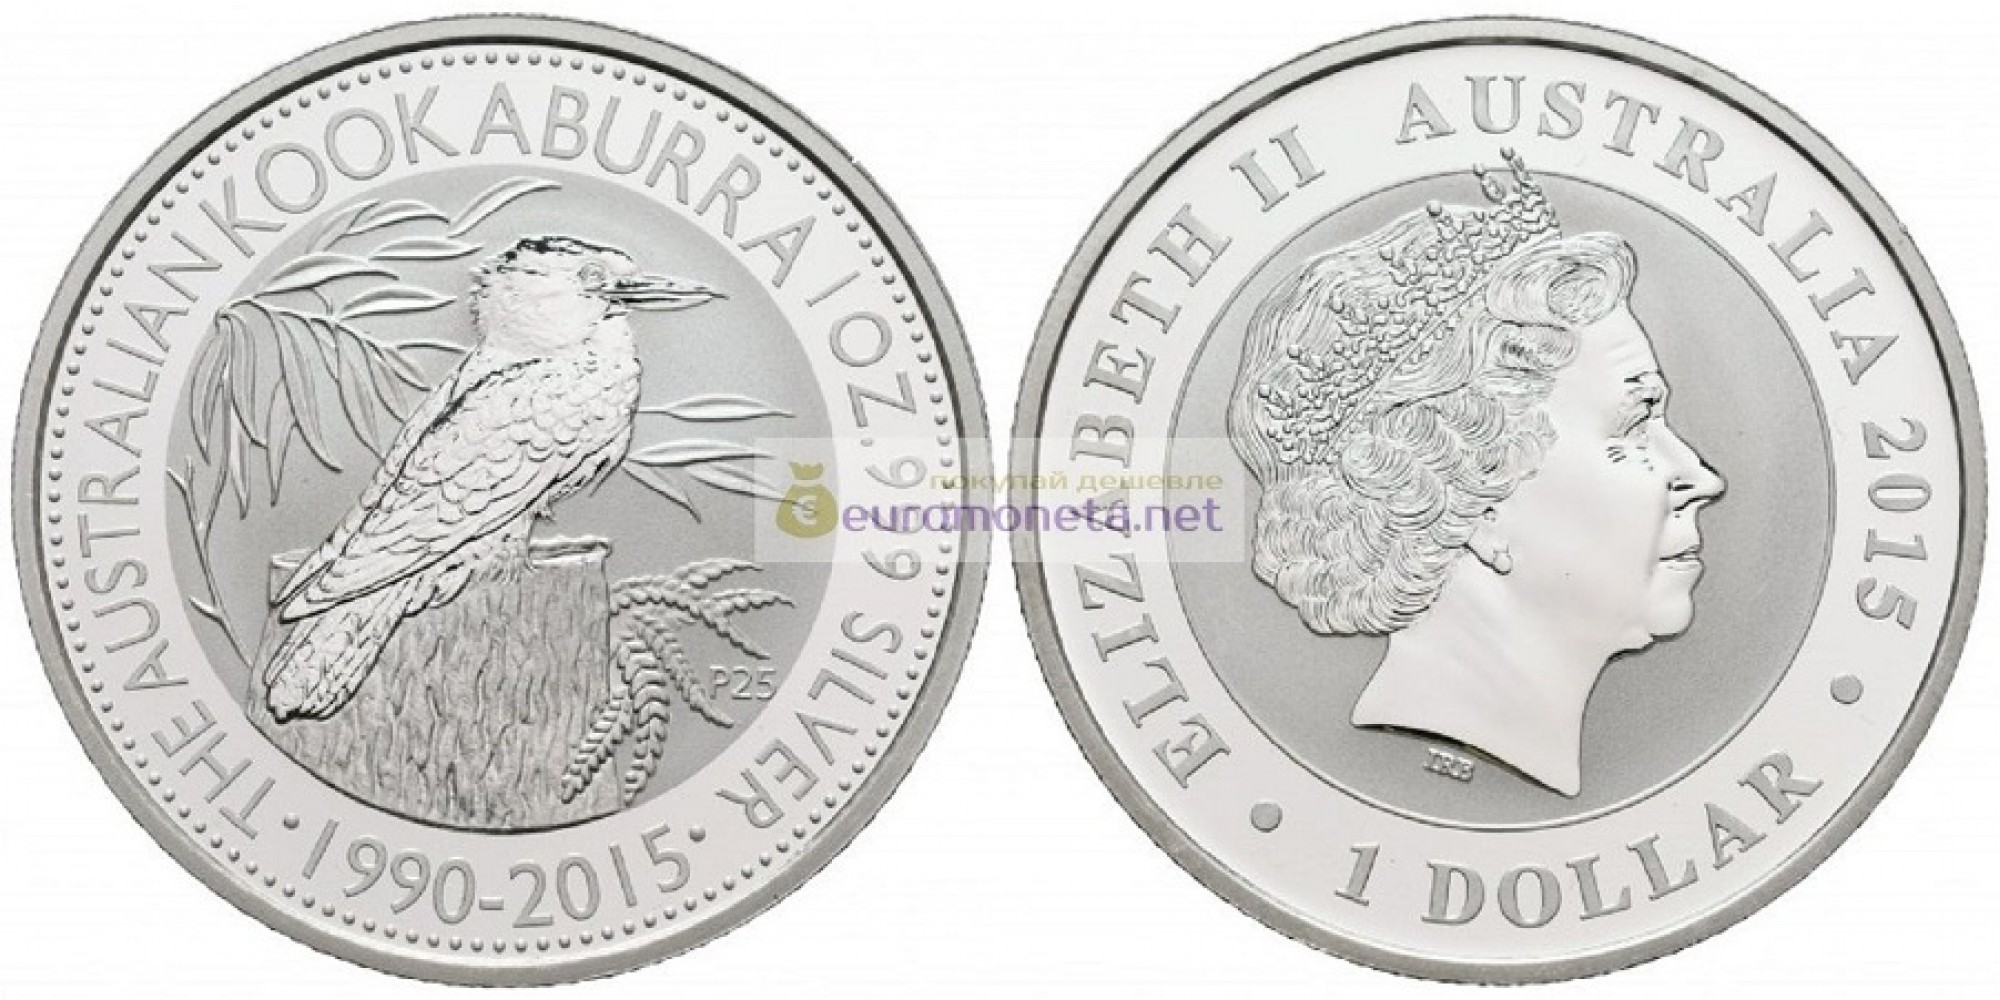 Австралия 1 доллар 2015 год 25 лет Австралийской Кукабурре. Серебро. пруф / proof